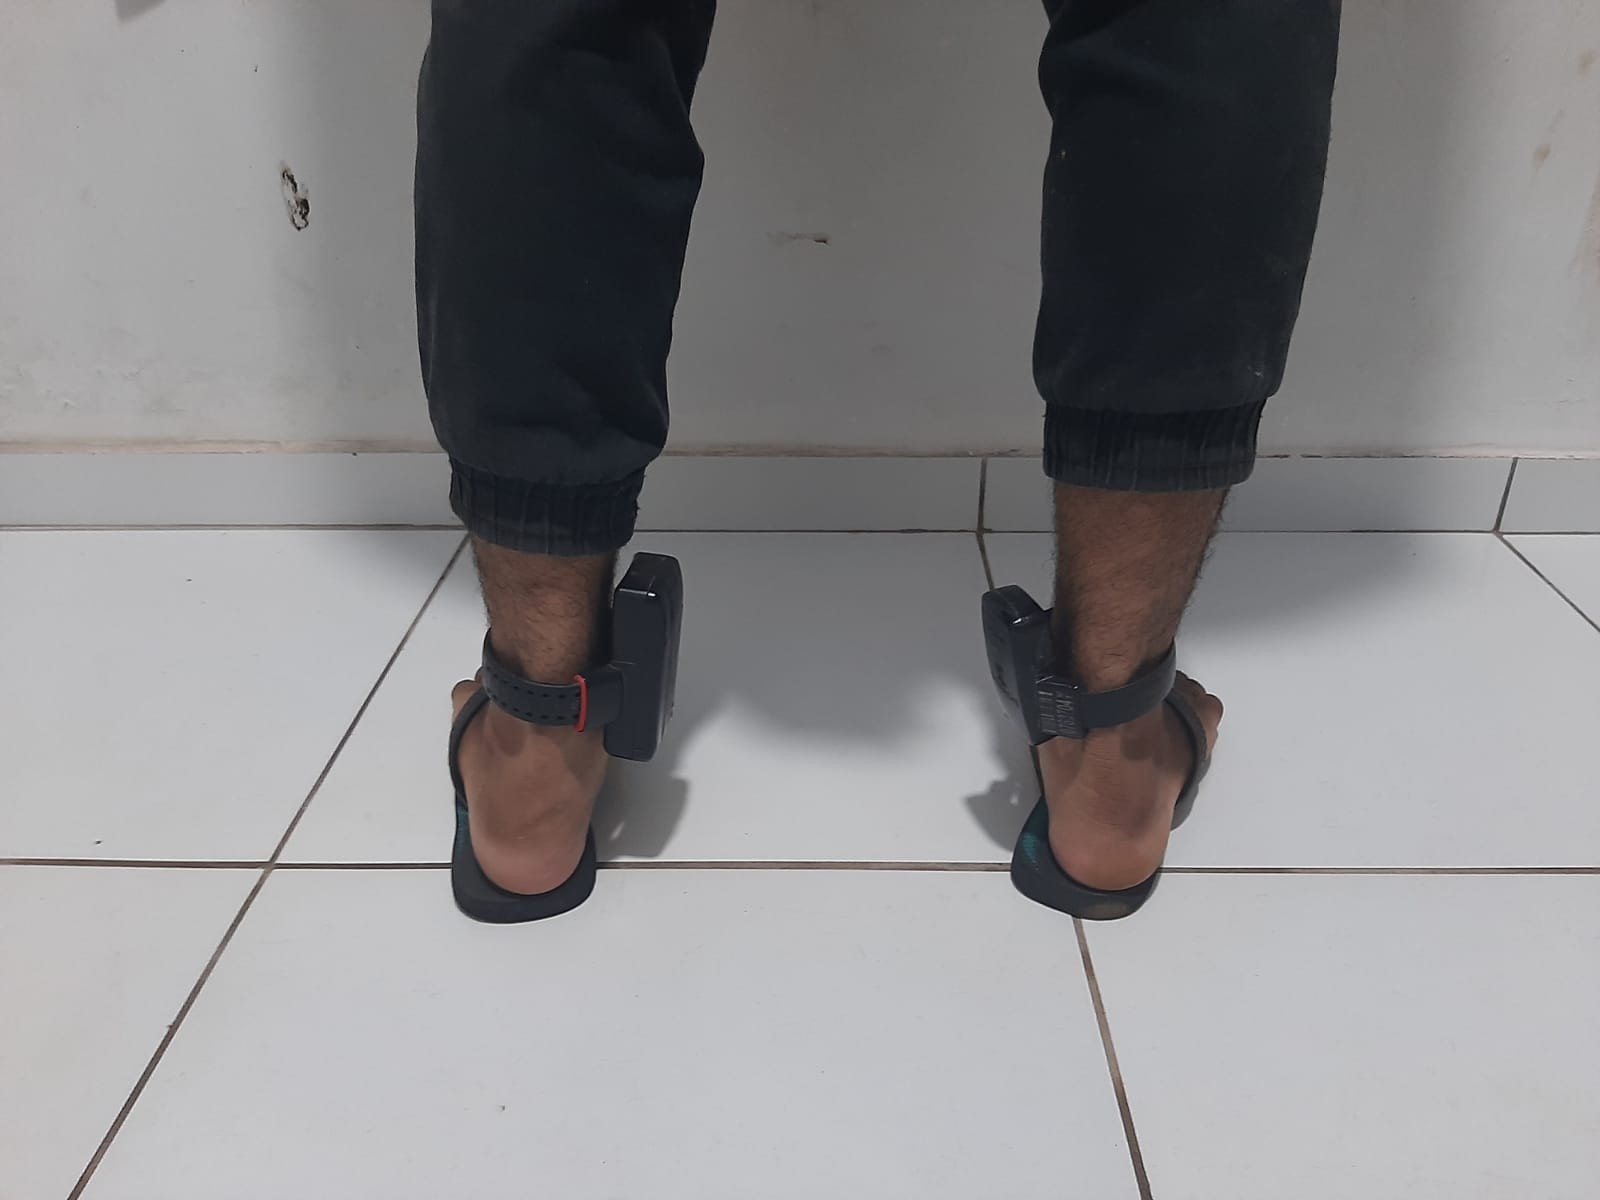 Gerente de academia é preso usando duas tornozeleiras eletrônicas ao mesmo tempo no Maranhão